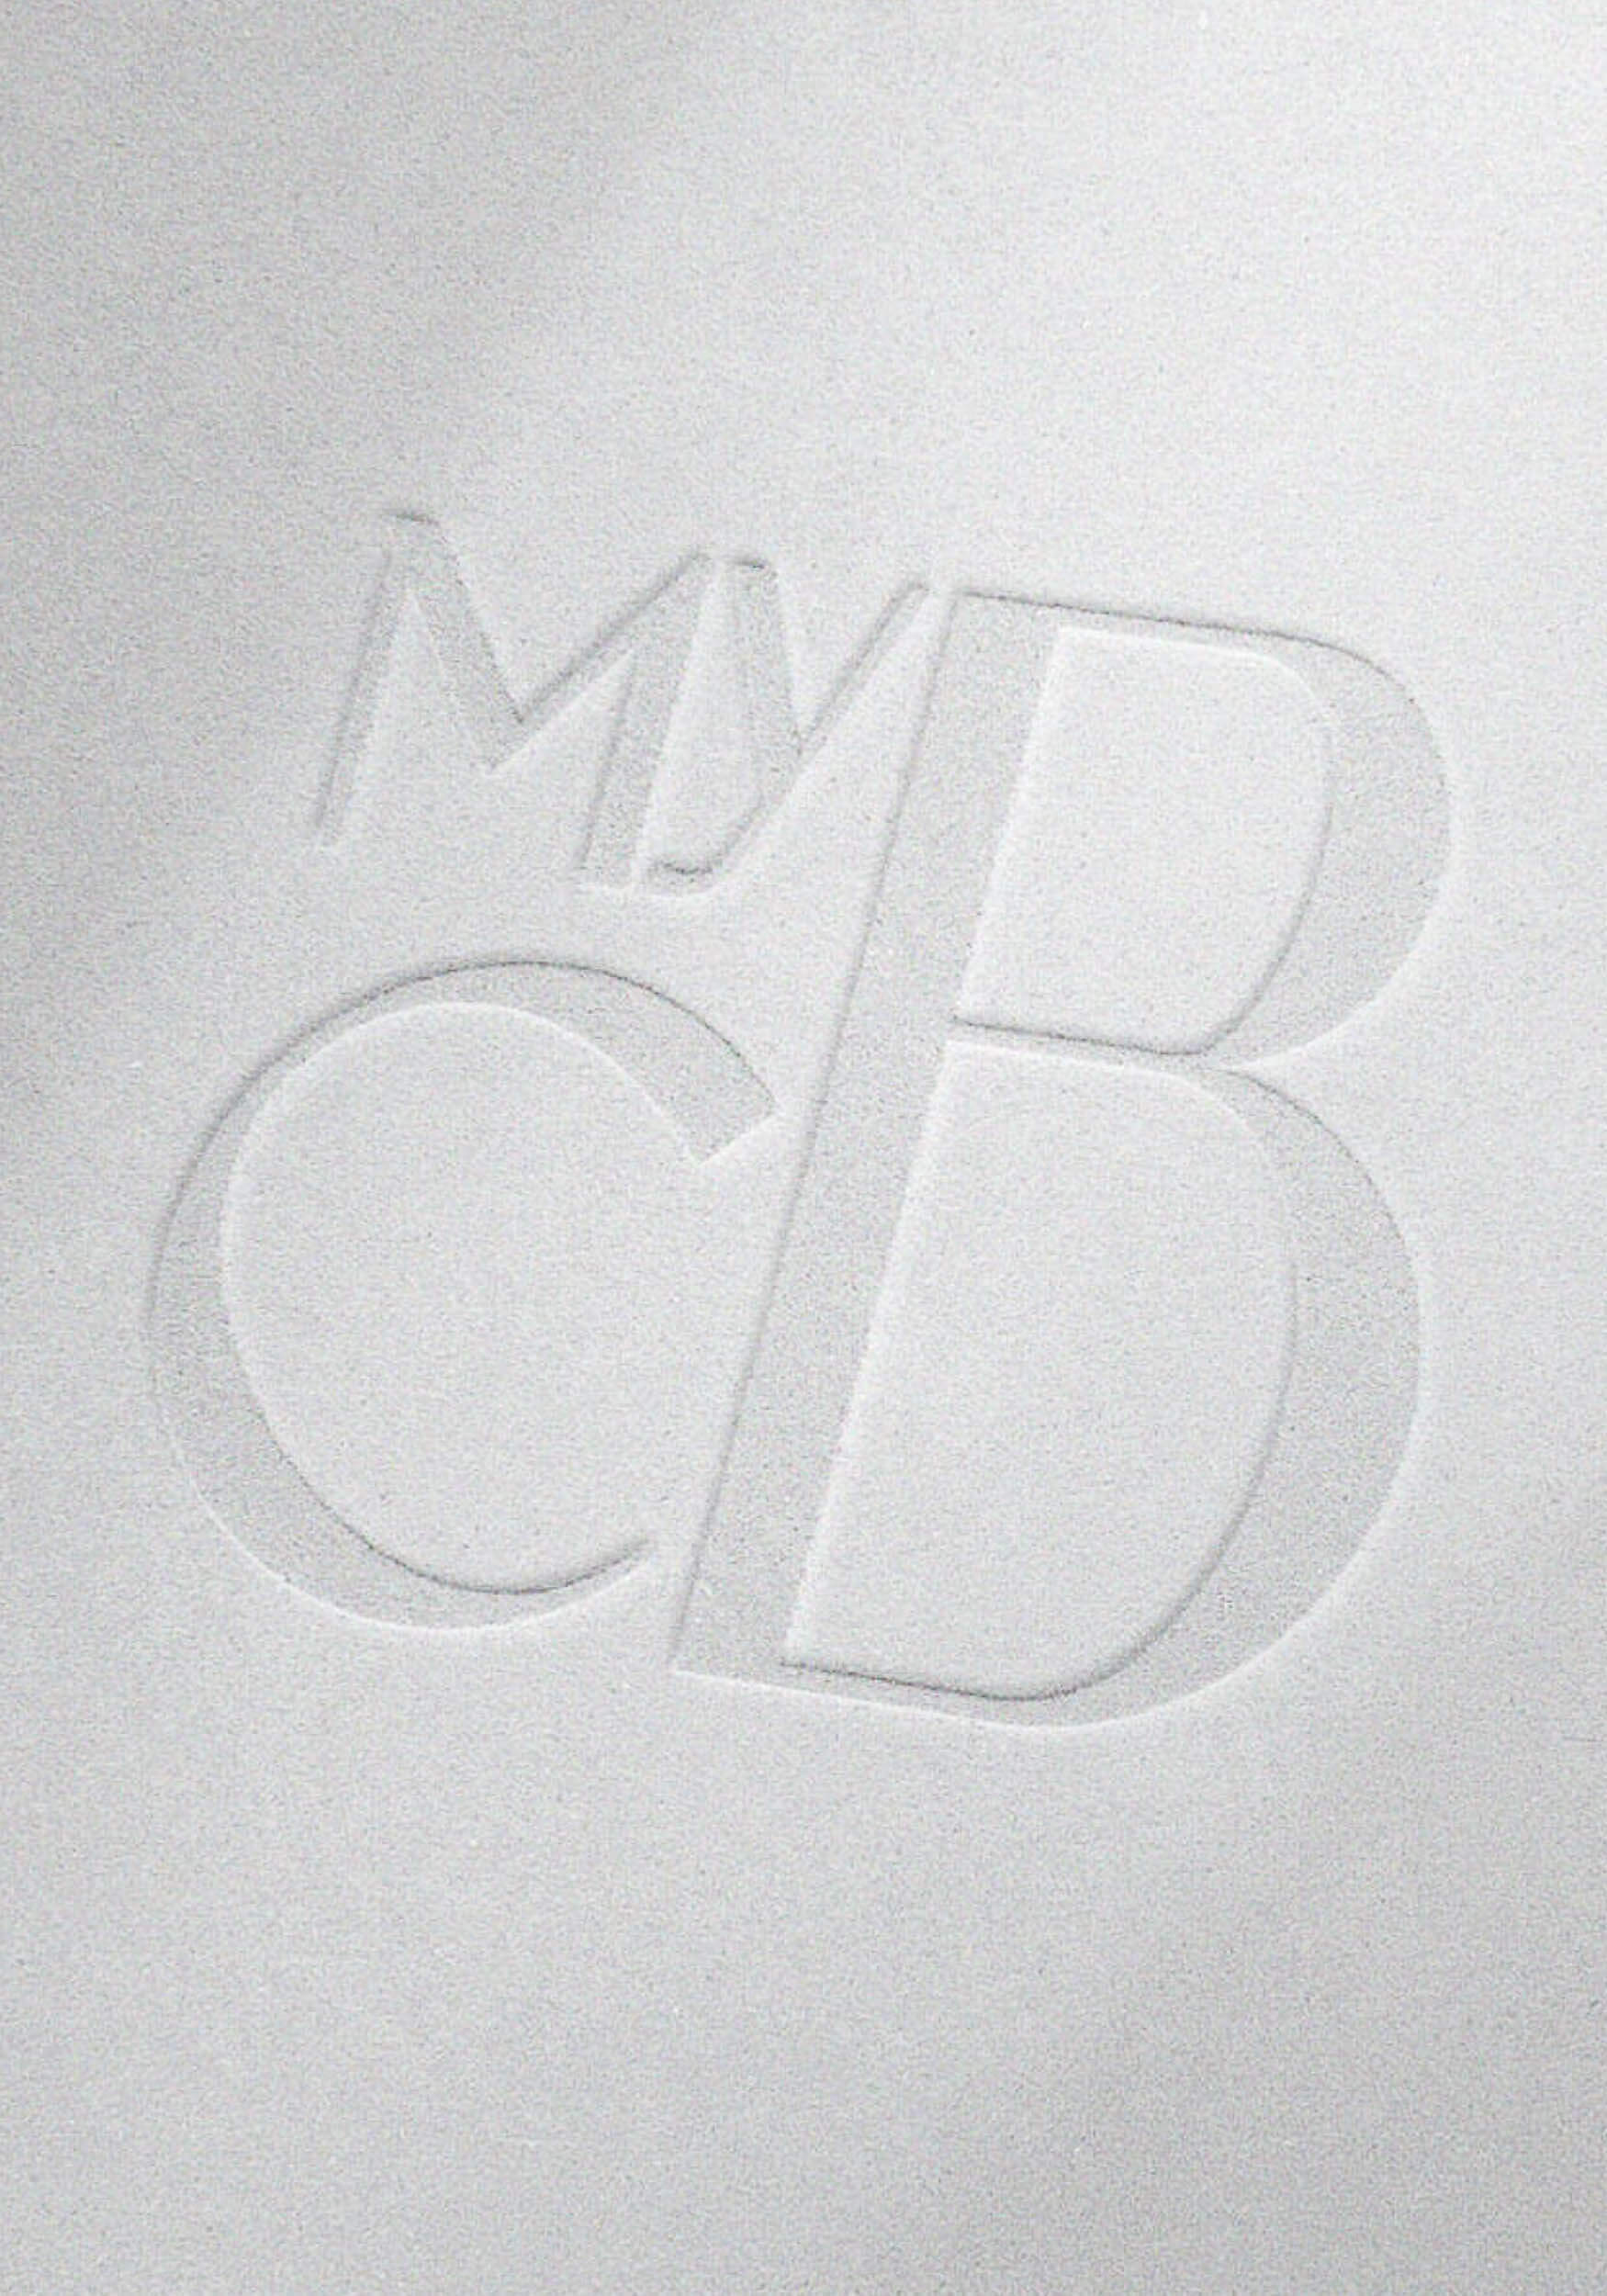 Marken Icon aus dem Branding von MyComeback